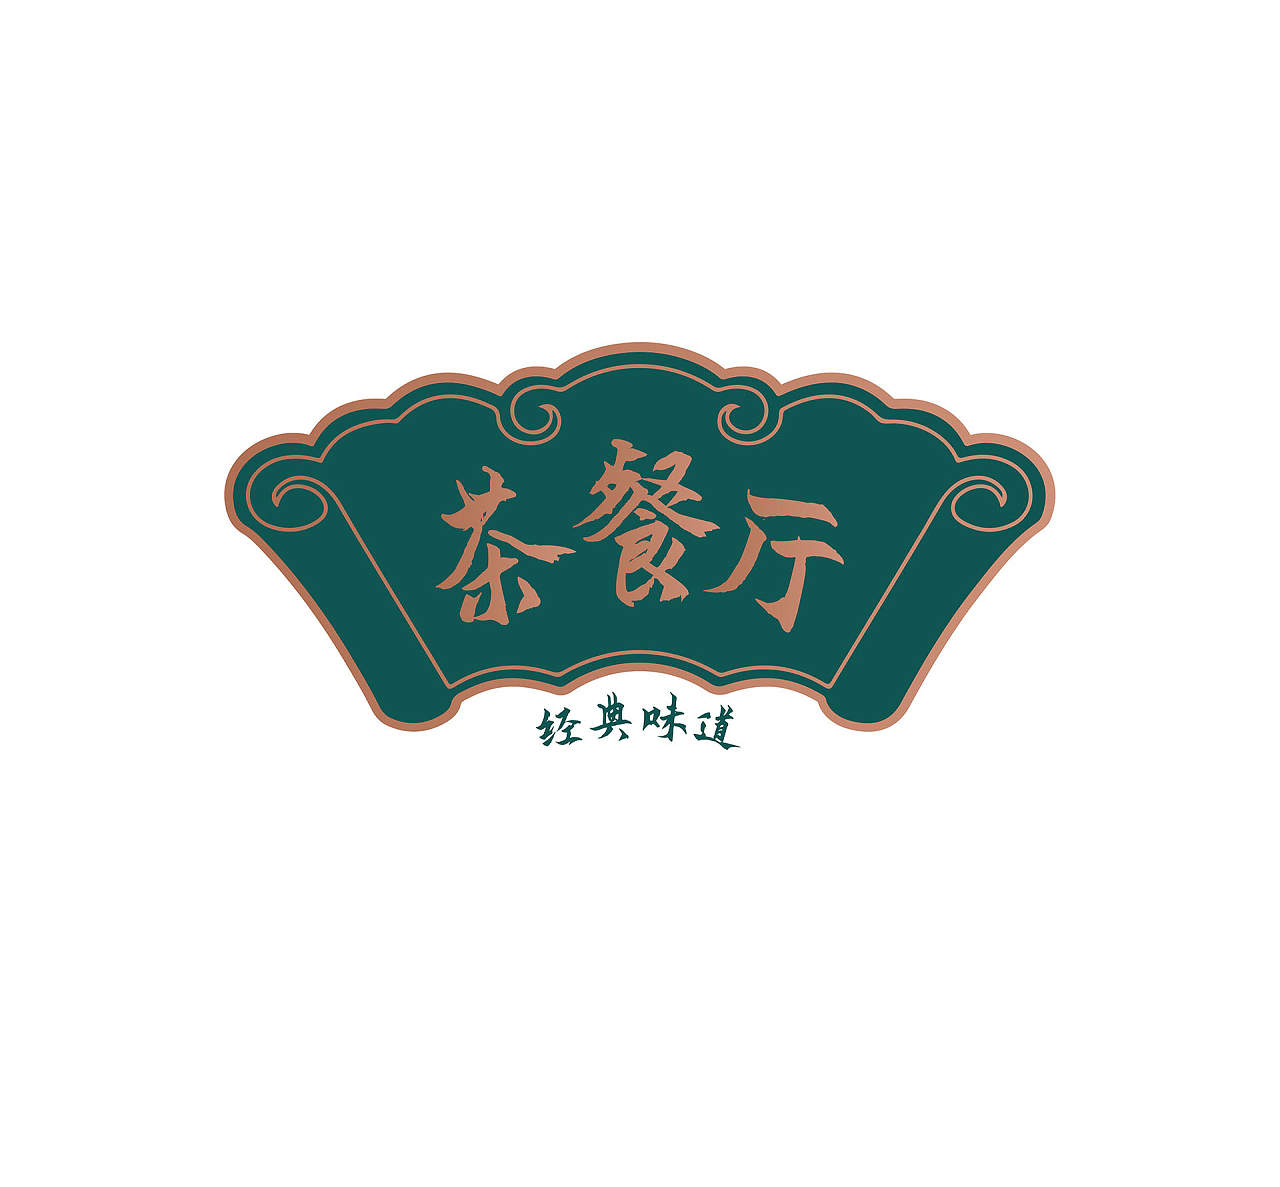 墨绿色中国风茶餐厅logo标识设计餐厅服务